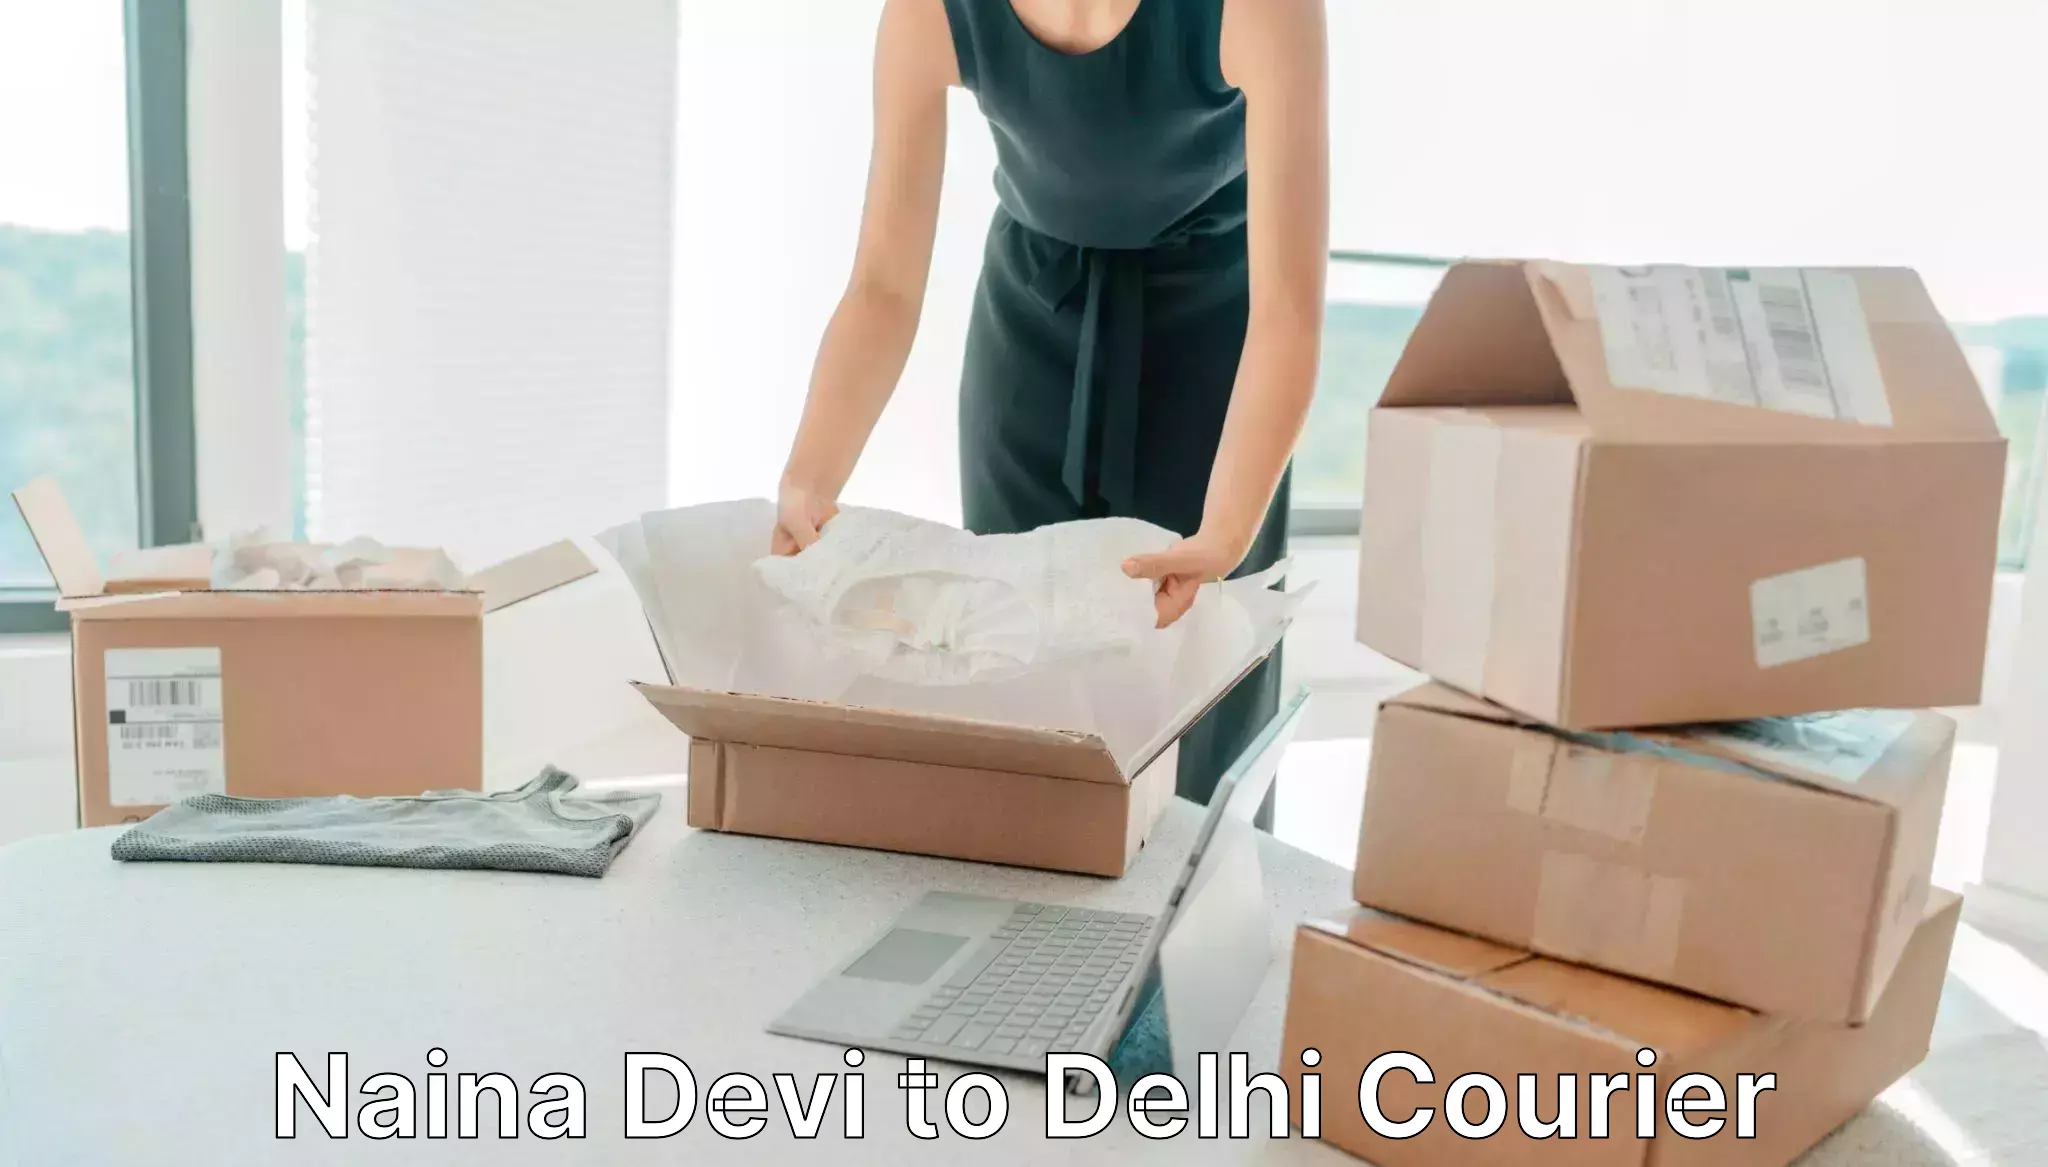 Urban courier service Naina Devi to Delhi